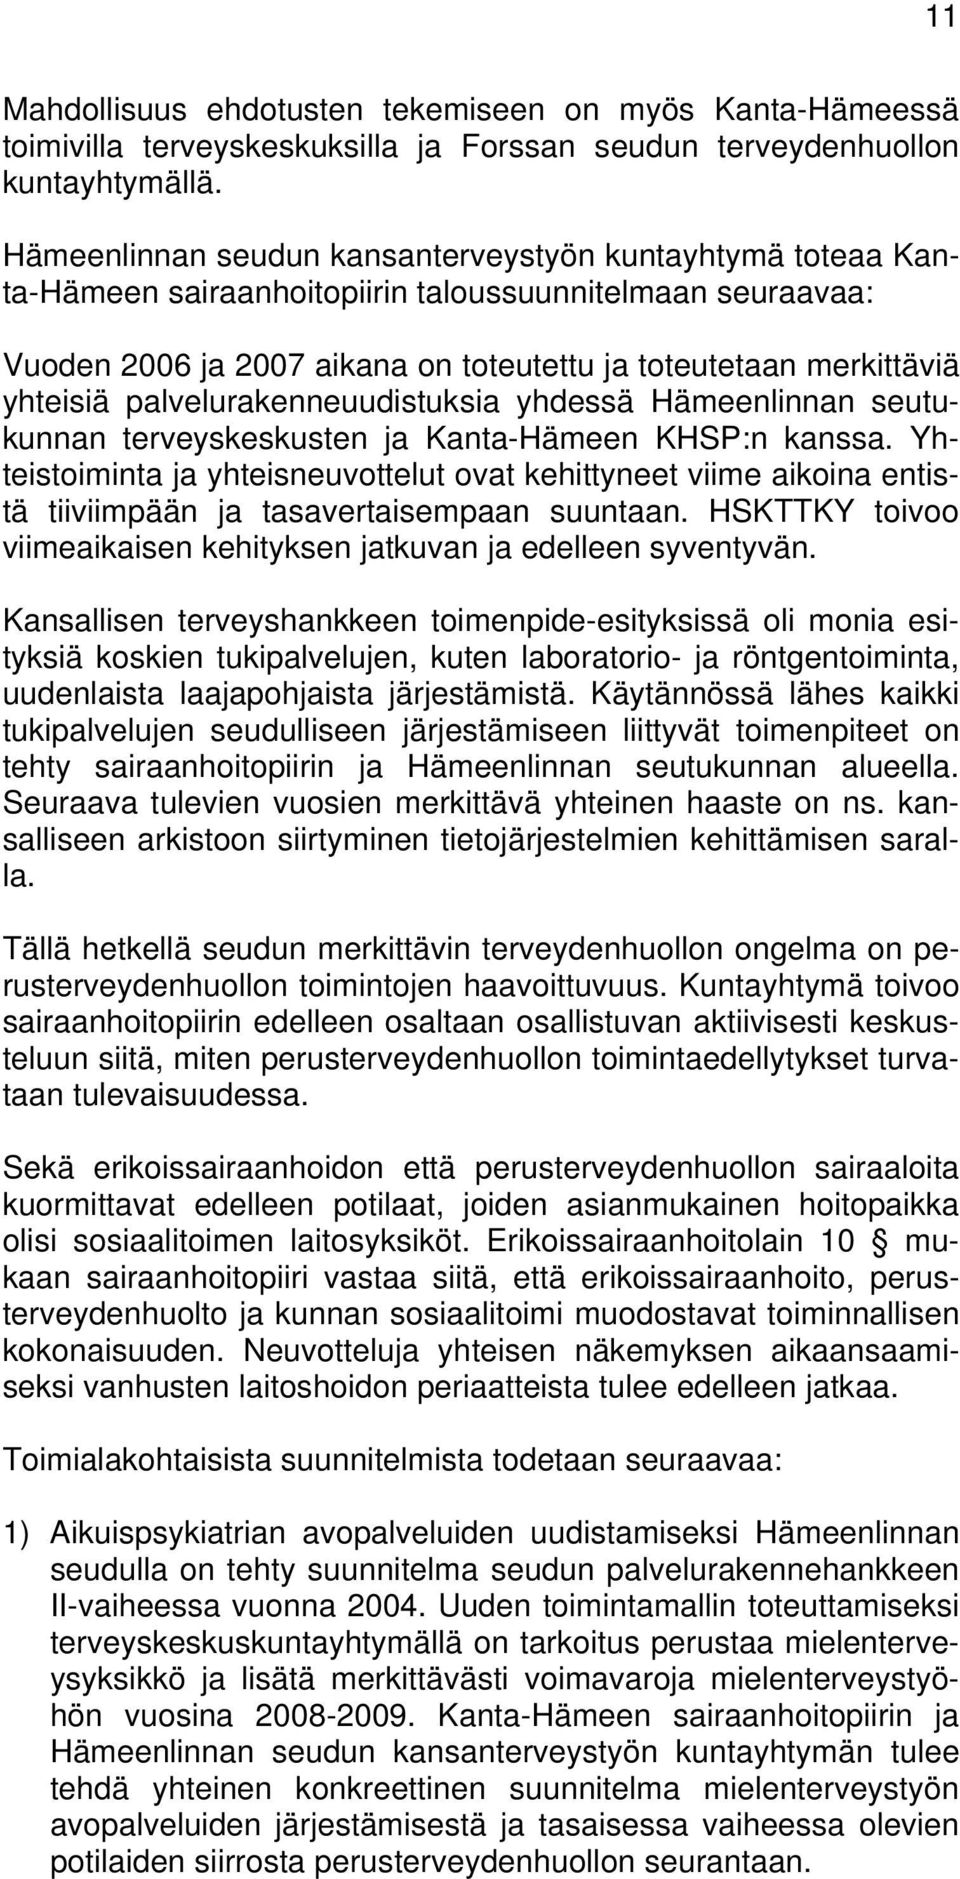 palvelurakenneuudistuksia yhdessä Hämeenlinnan seutukunnan terveyskeskusten ja Kanta-Hämeen KHSP:n kanssa.